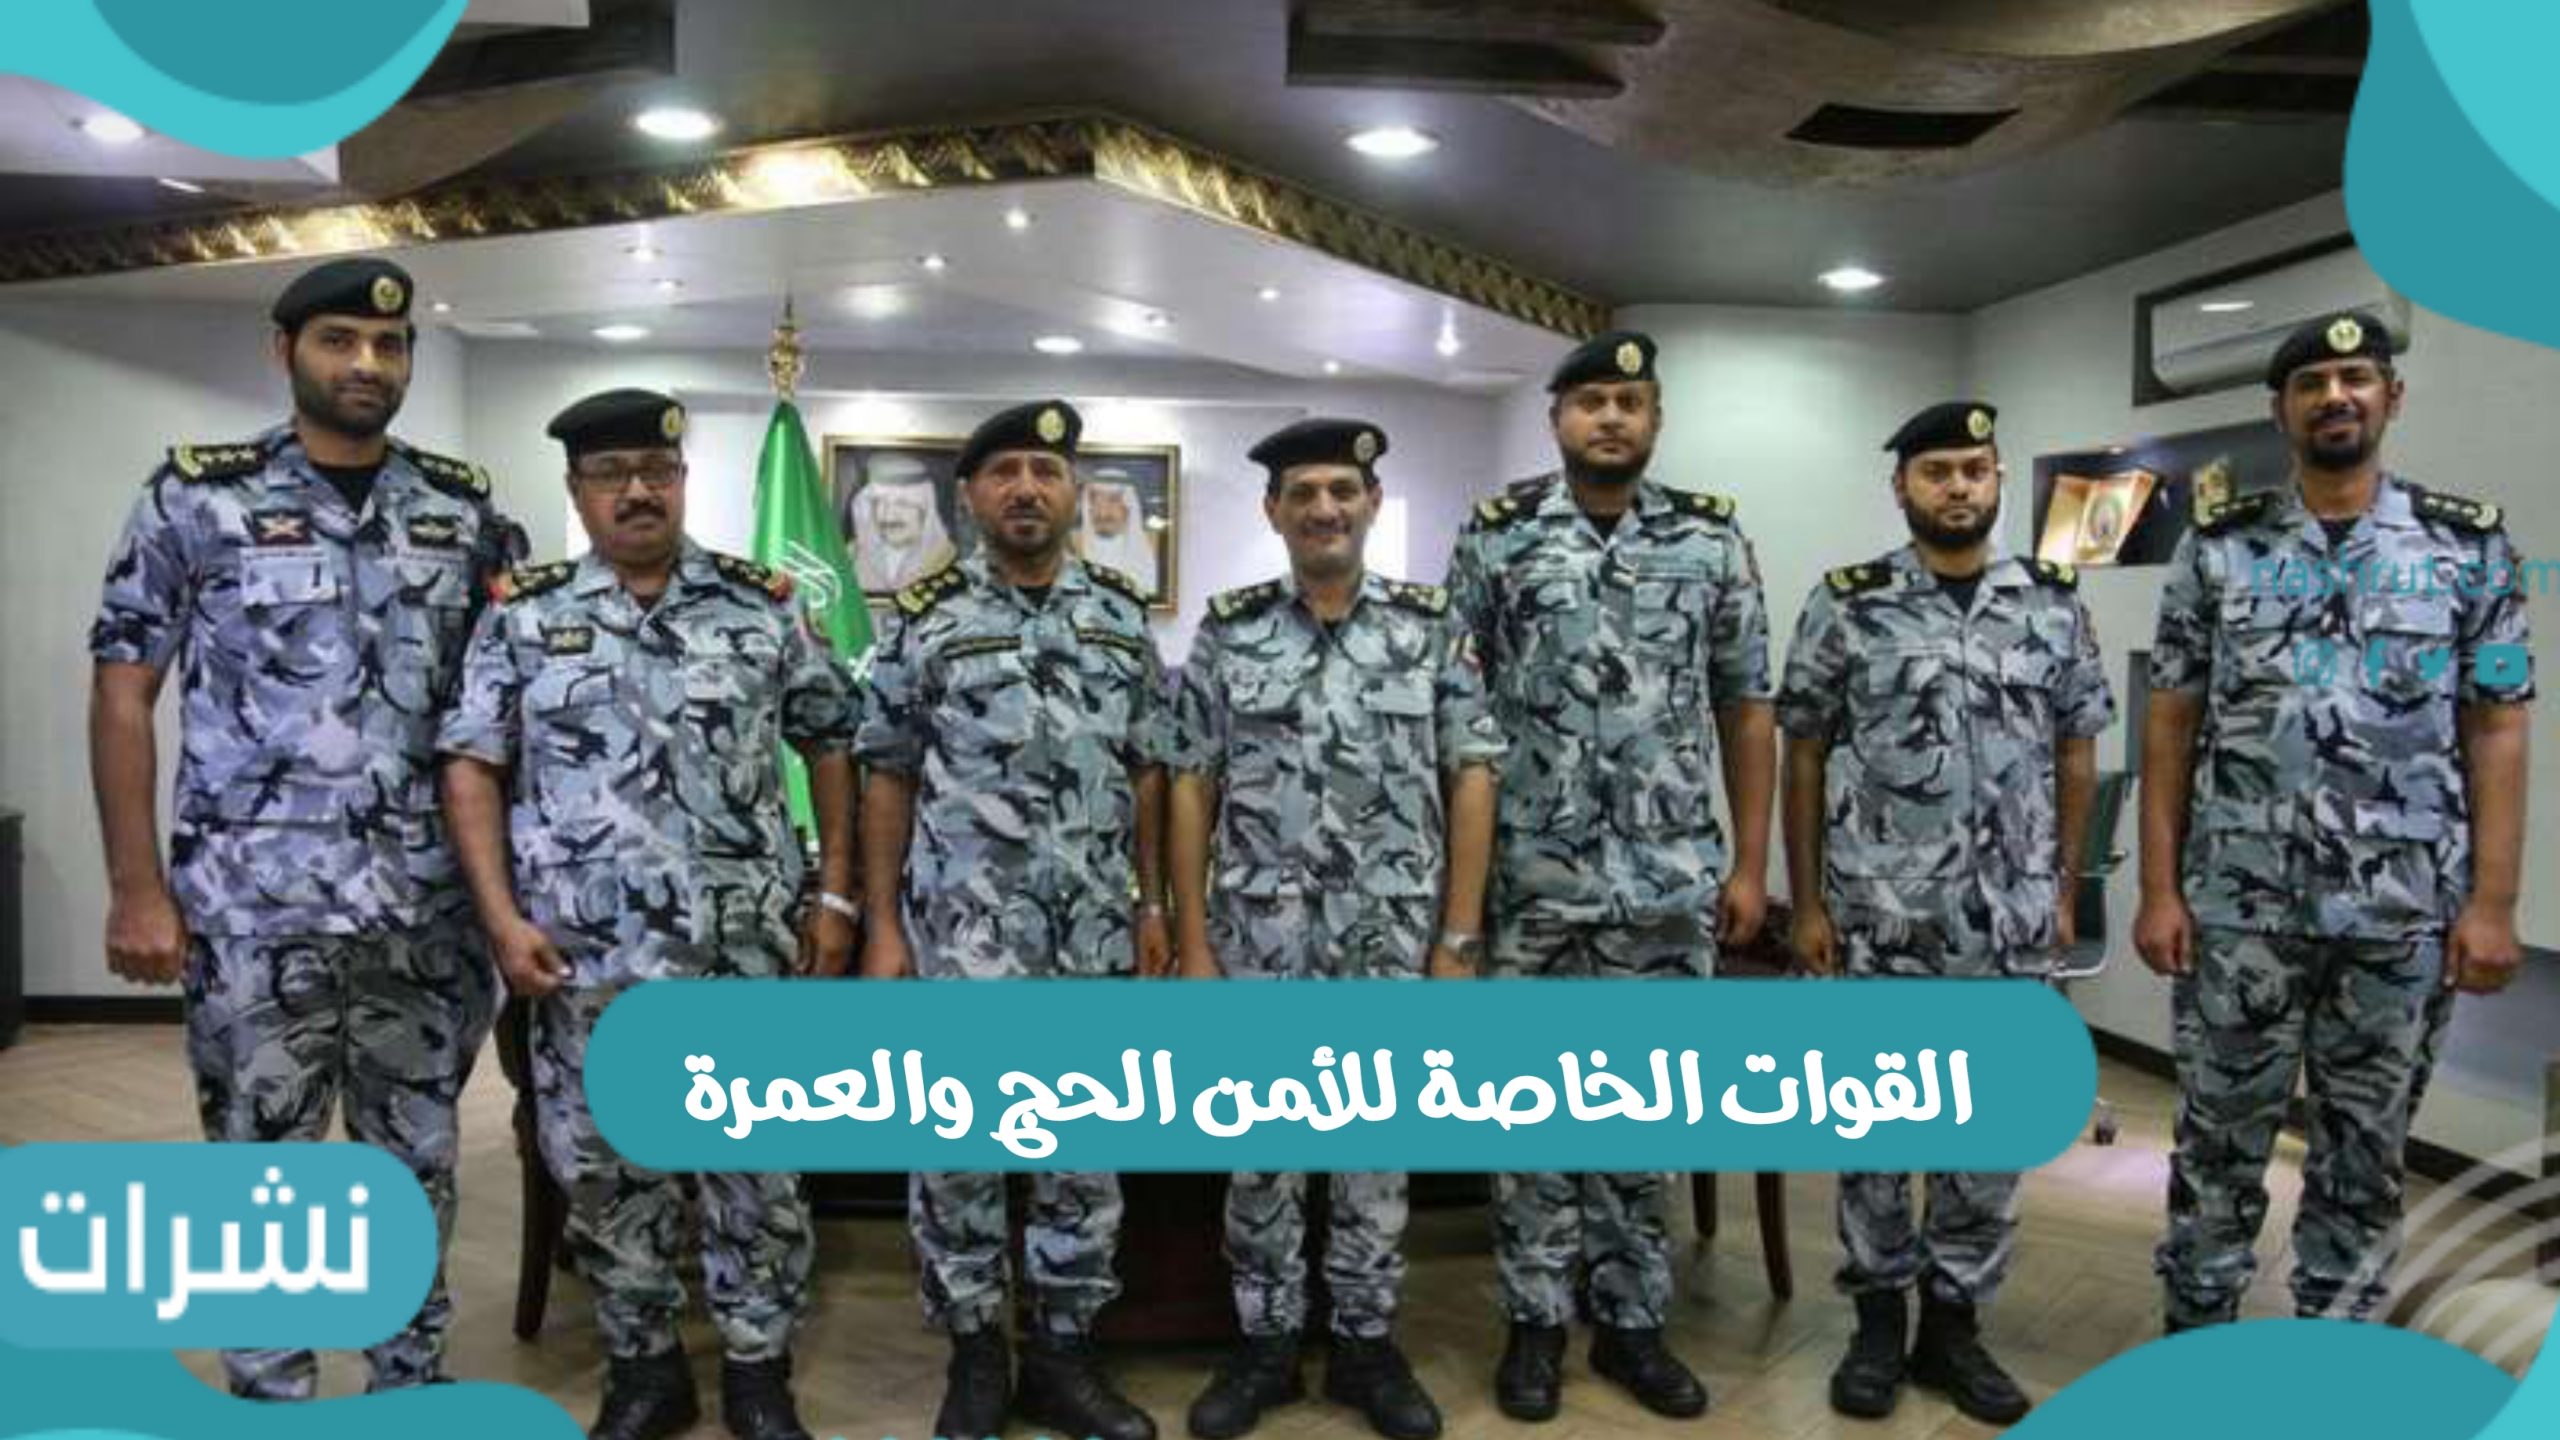 القوات الخاصة للأمن الحج والعمرة بالمملكة العربية السعودية - نشرات